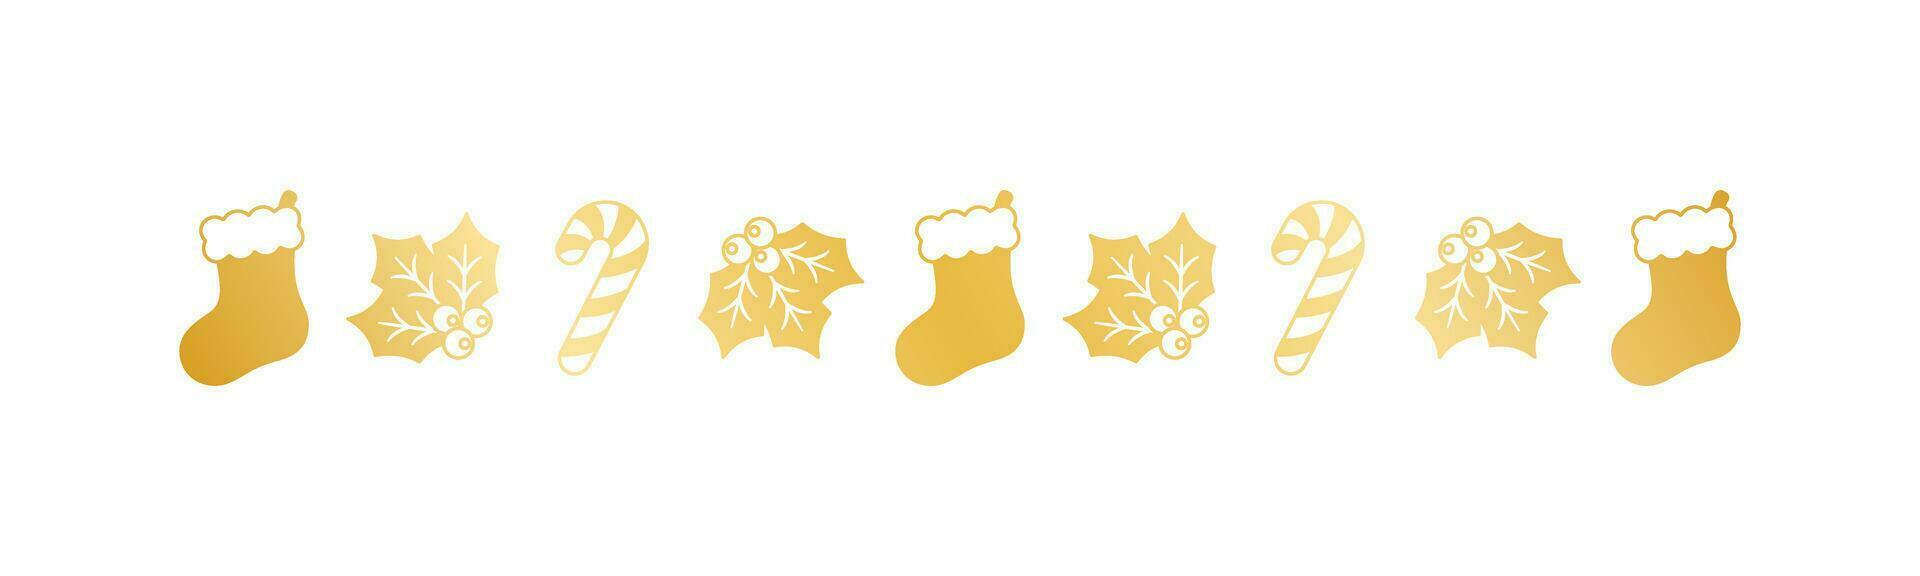 oro Navidad temática decorativo frontera y texto divisor, Navidad media, caramelo caña y muérdago modelo silueta. vector ilustración.